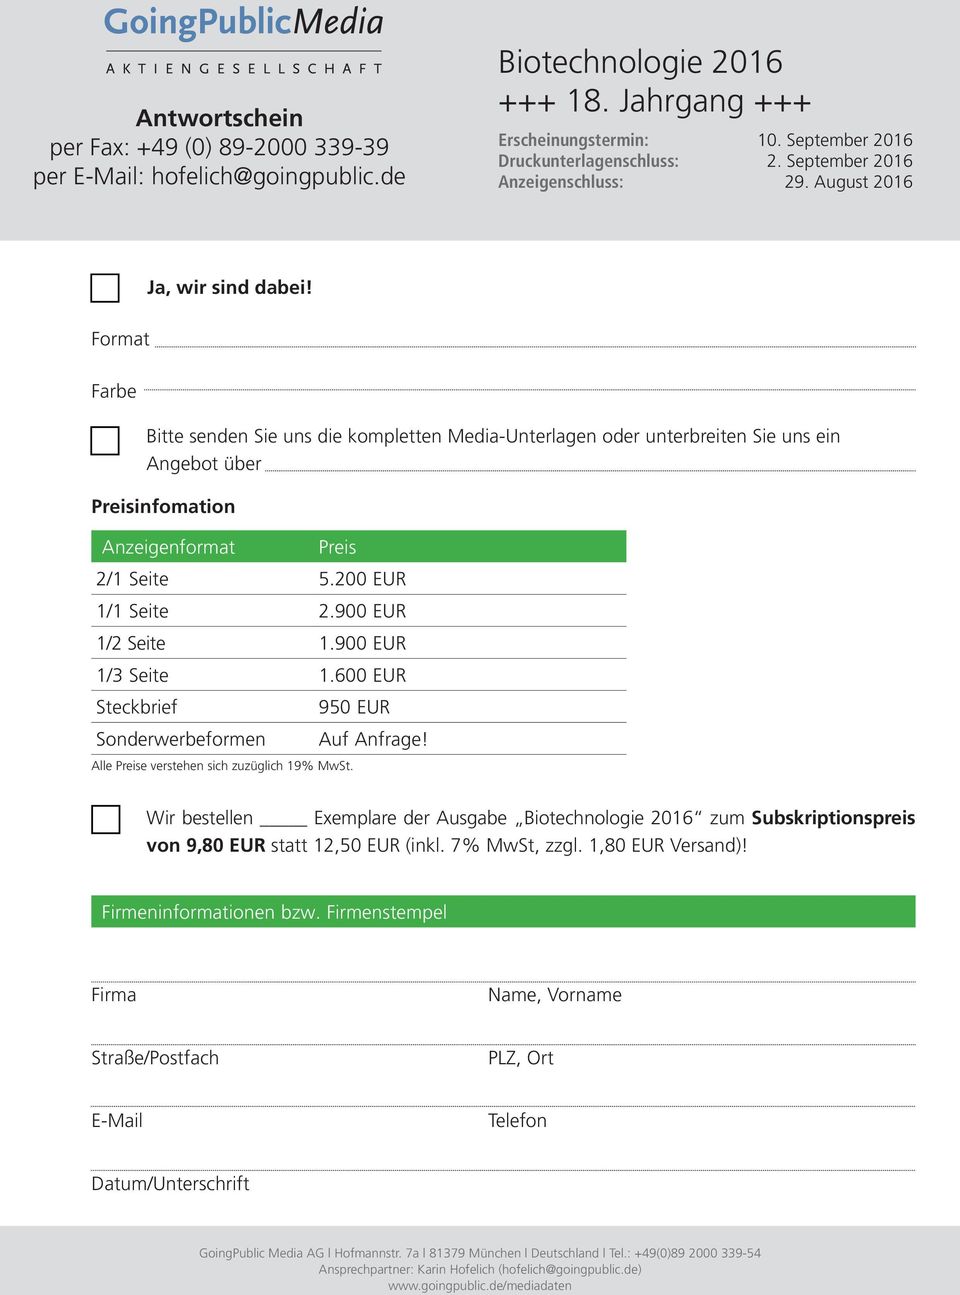 Bitte senden Sie uns die kompletten Media-Unterlagen oder unterbreiten Sie uns ein Angebot über Preisinfomation Anzeigenformat Preis 2/1 Seite 5.200 EUR 1/1 Seite 2.900 EUR 1/2 Seite 1.